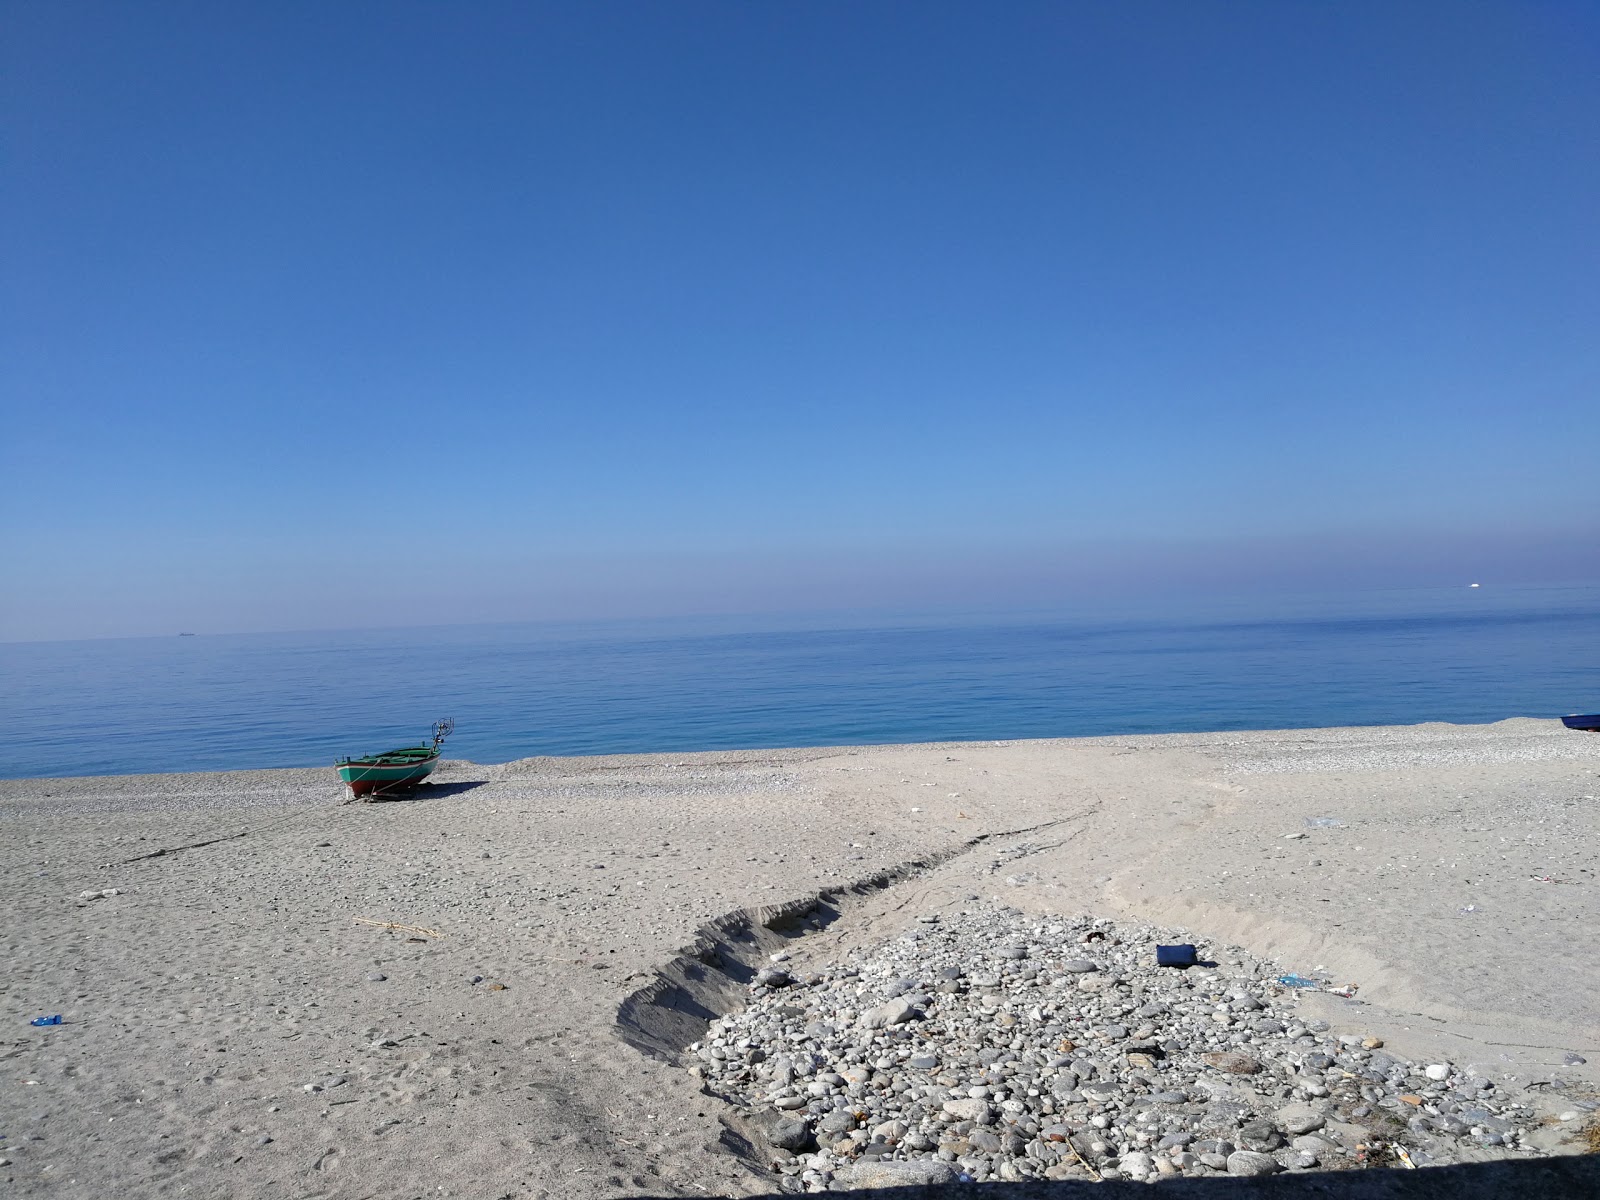 Fotografie cu Favazzina beach zonă de stațiune de pe plajă